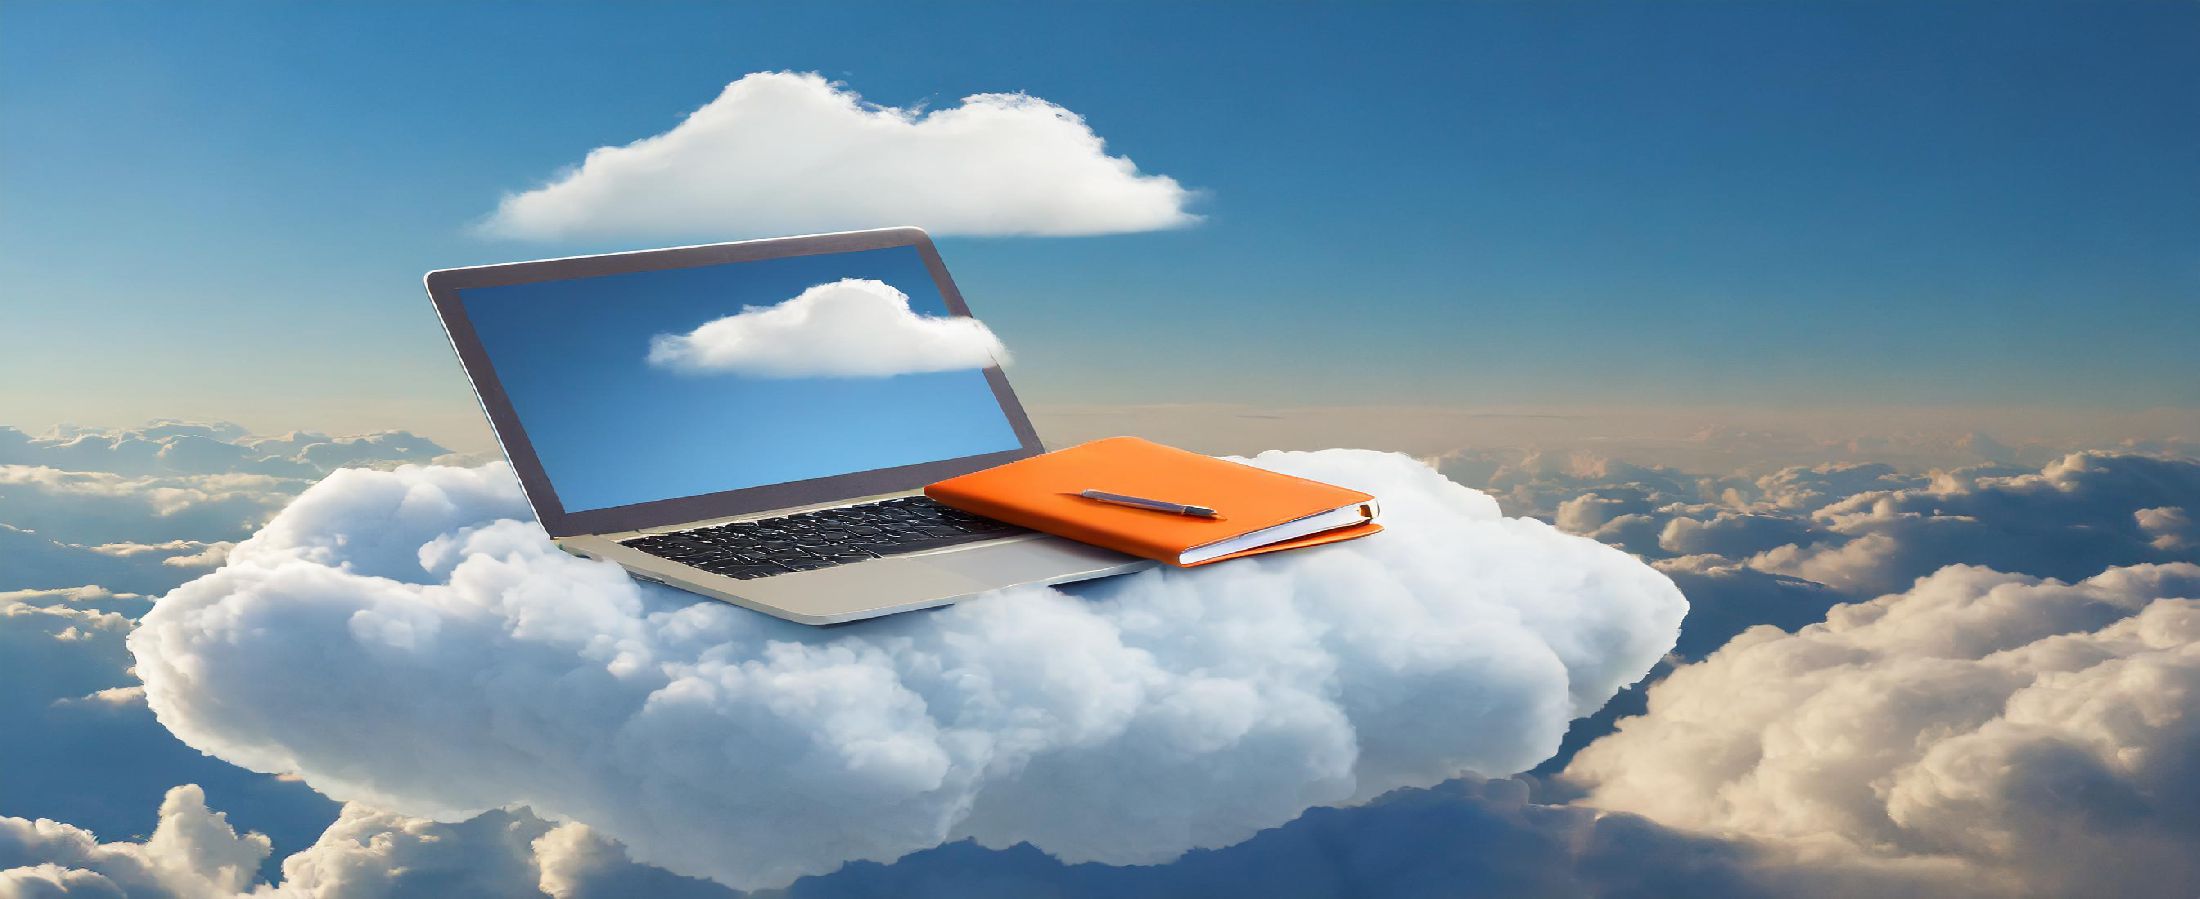 Bir bulutun üzerinde duran bir dizüstü bilgisayar ve bir not defteri.